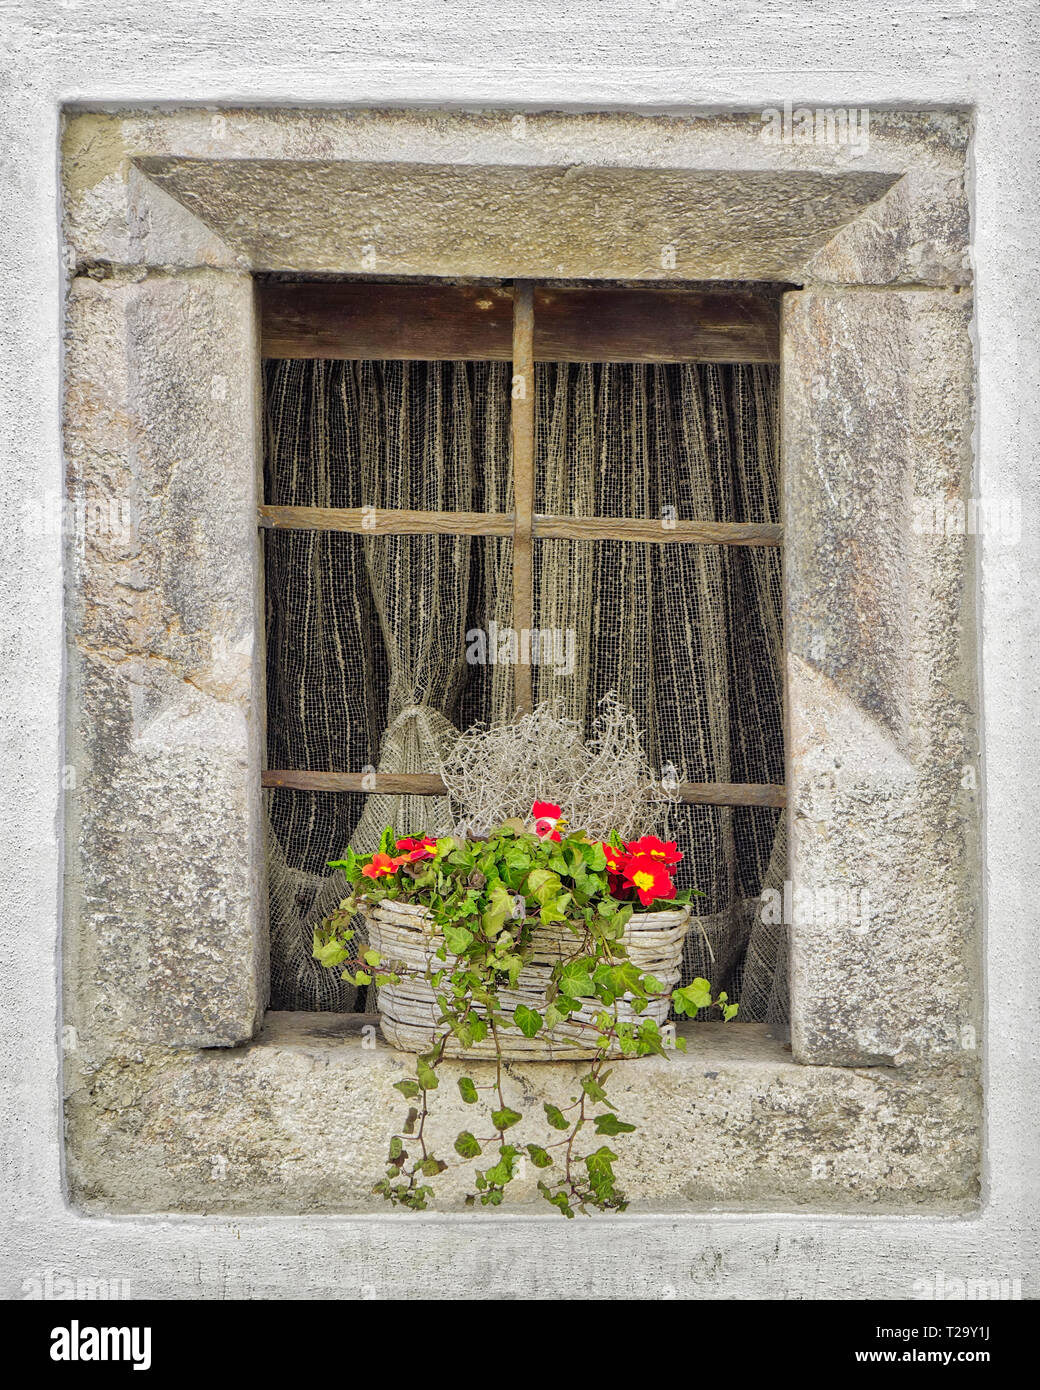 A - Tirolo: vecchia finestra in pietra con cesto fiorito a Rattenberg su Inn Foto Stock